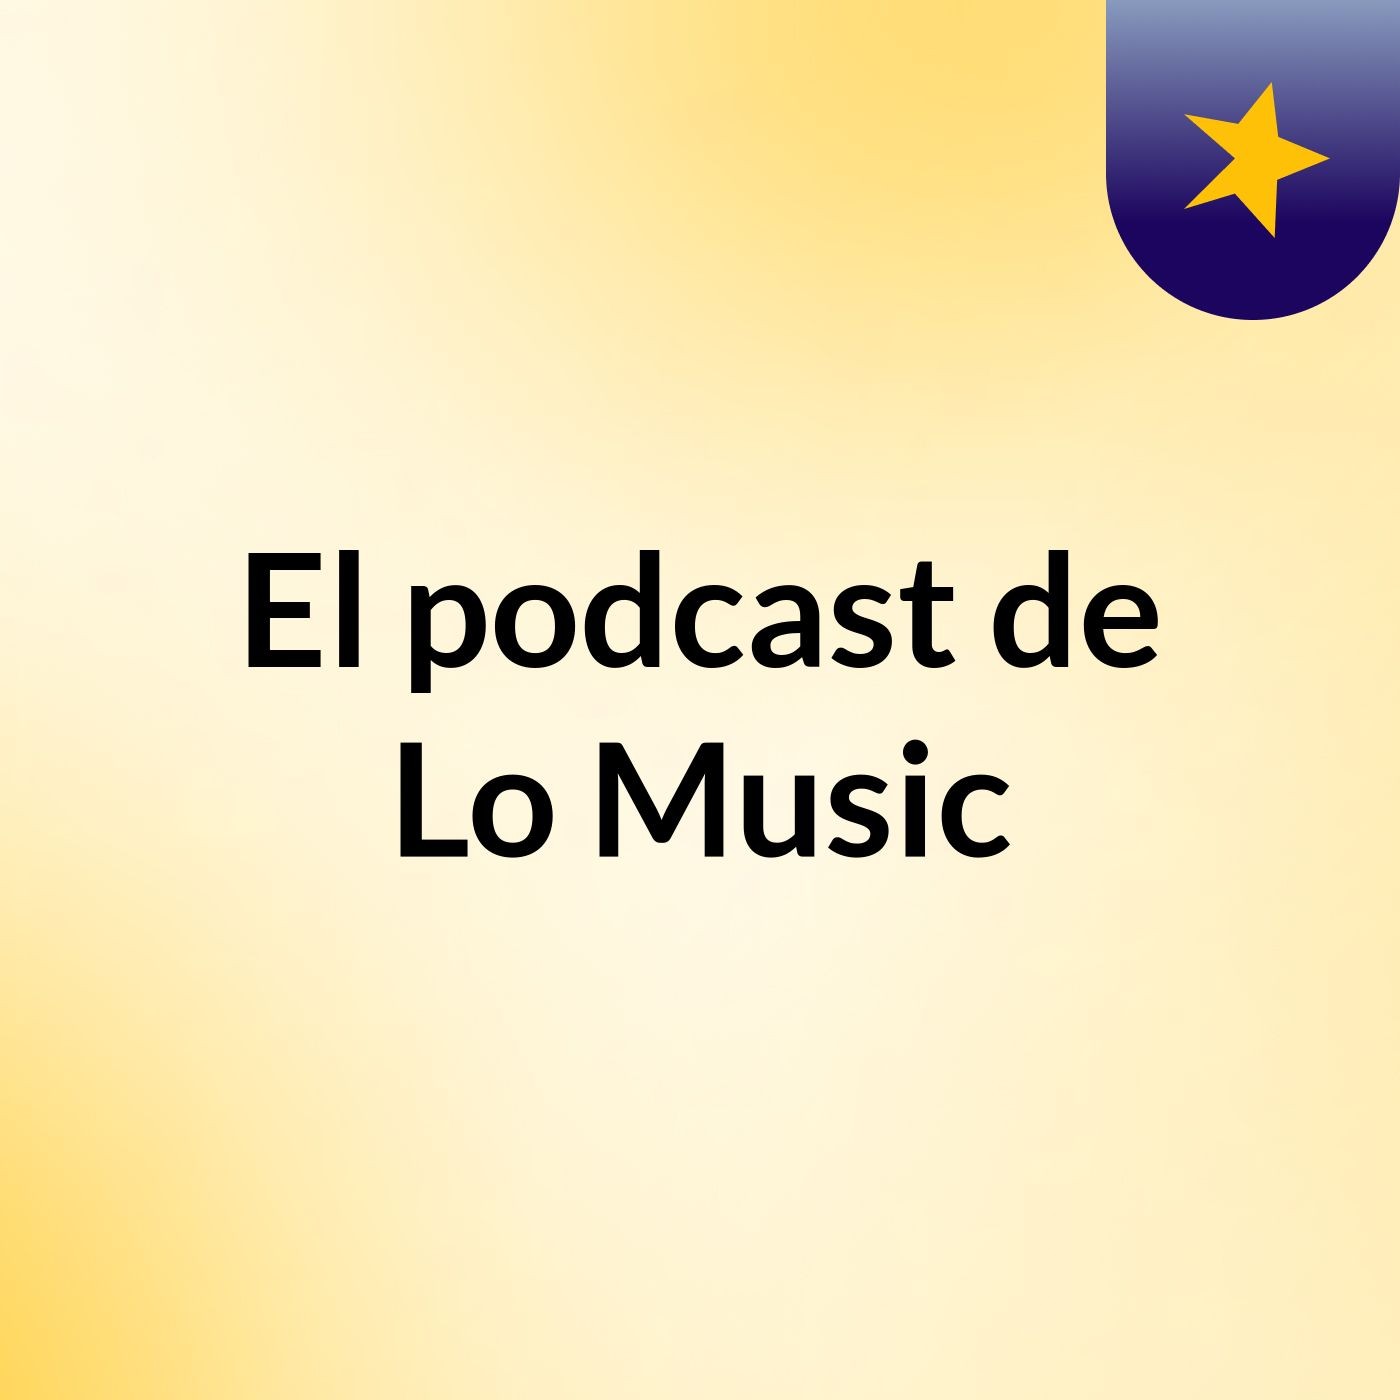 Episodio 7 - El podcast de Lo Music